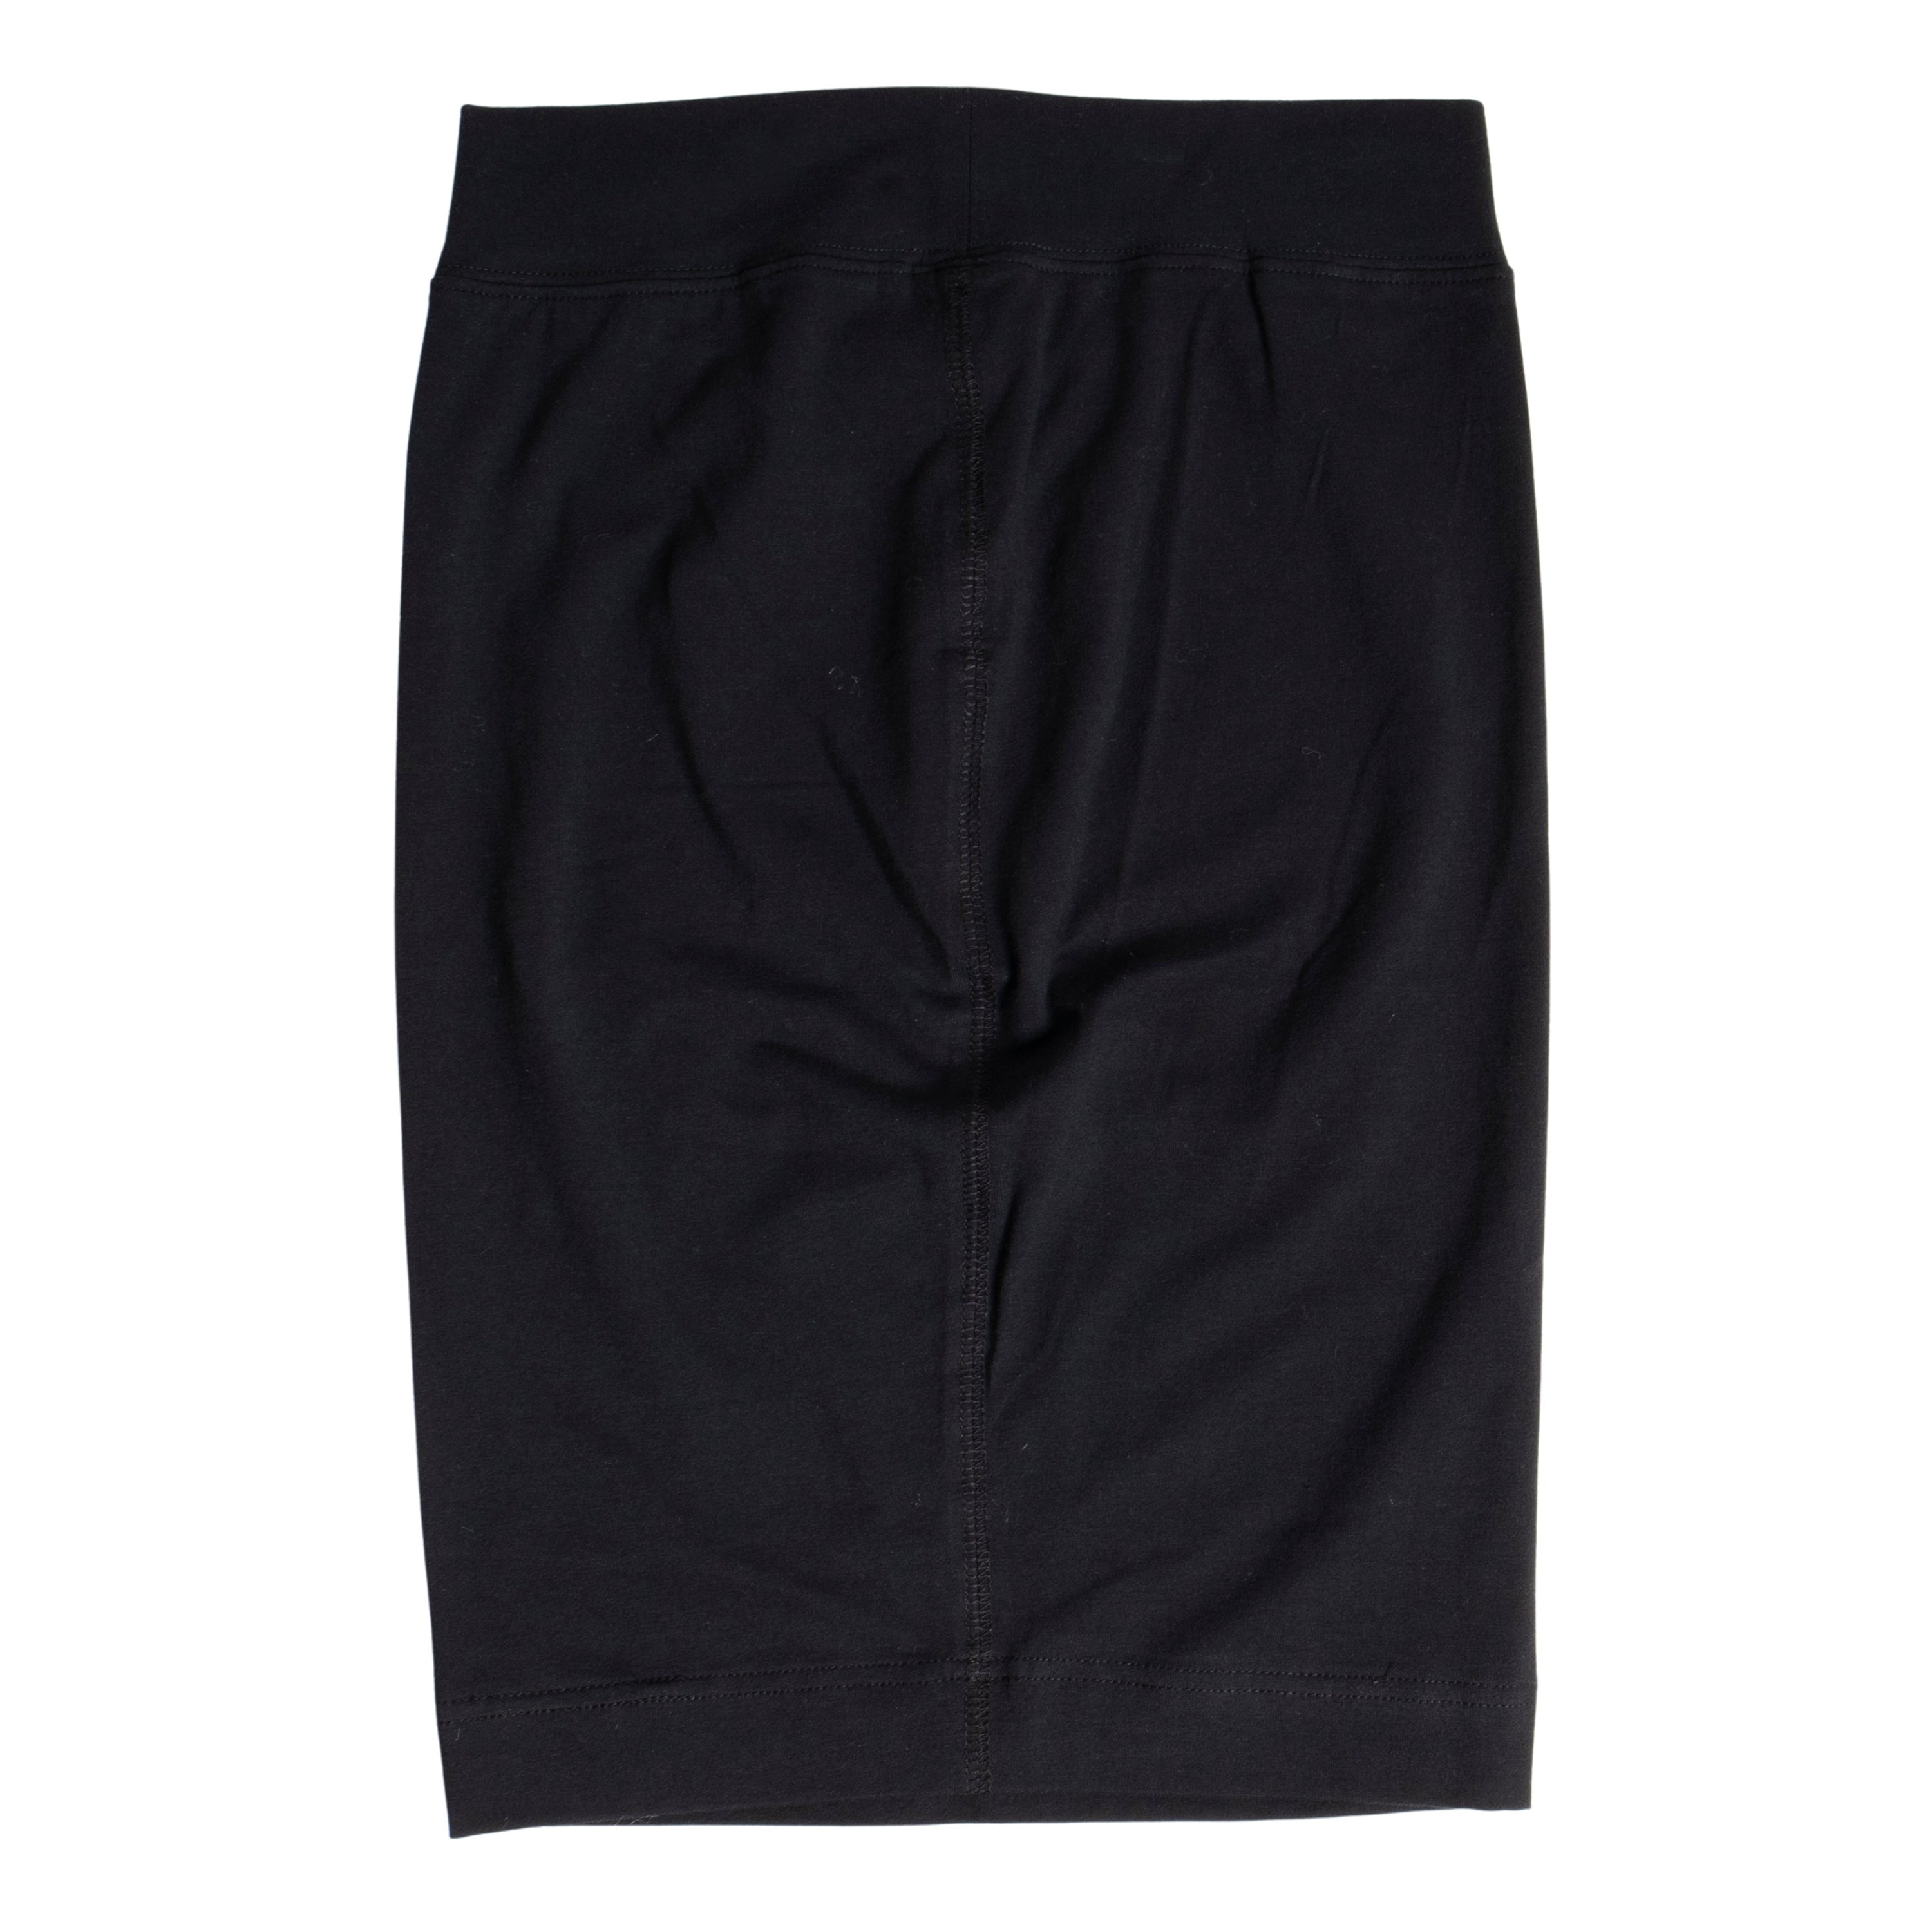 KIDPIK Girls Pull On Pencil Skirt, Size: XXS (4) - XXL (16) - Walmart.com